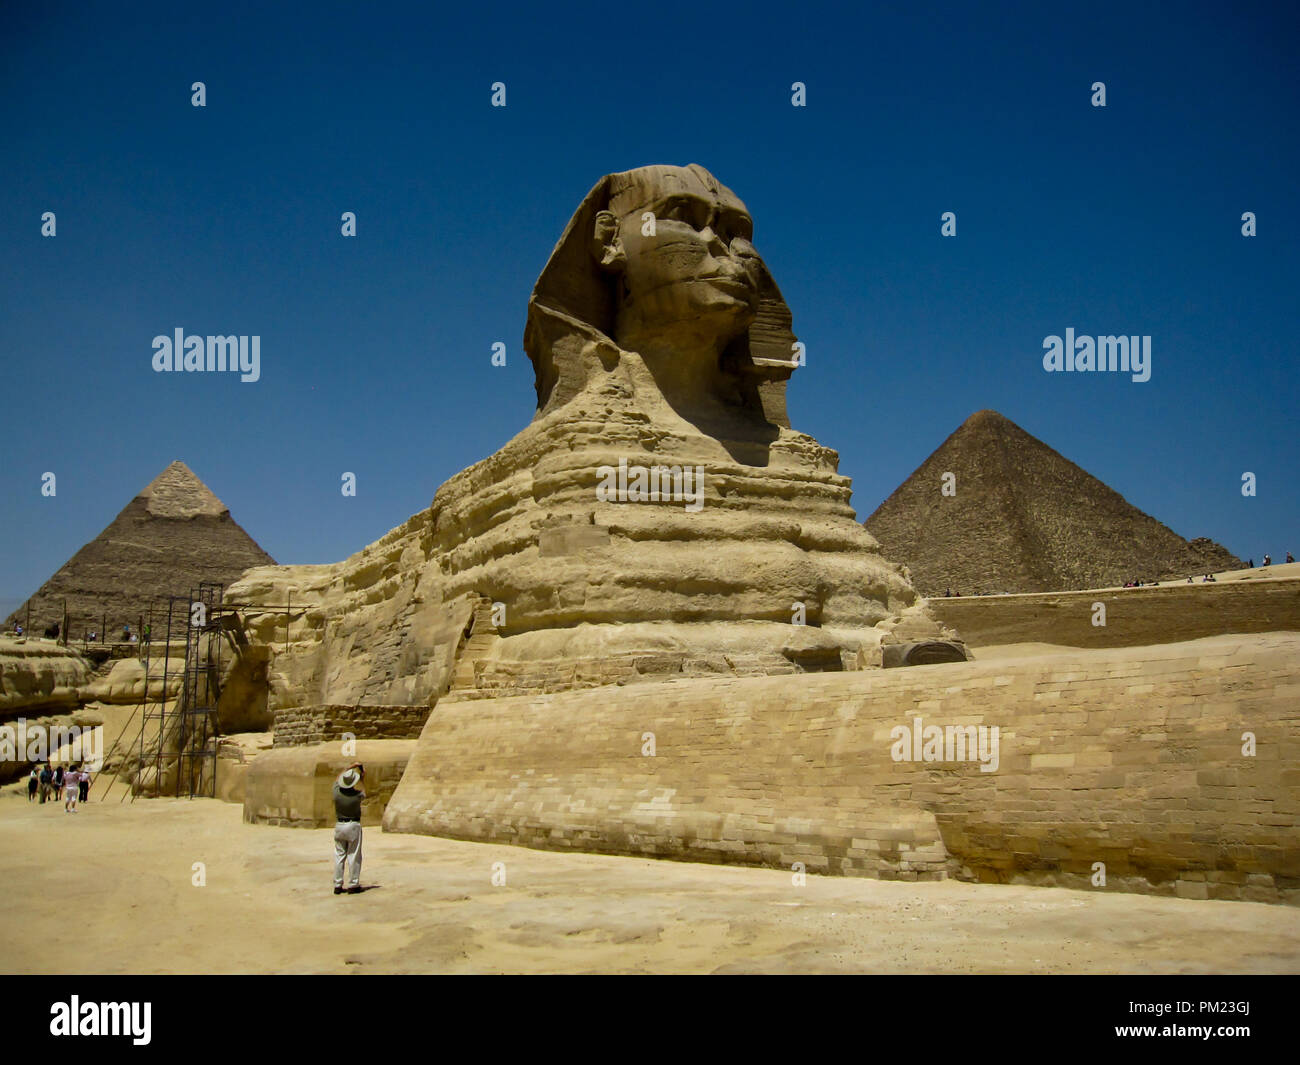 Close up viste la Grande Sfinge di Giza in Egitto in una limitata area di accesso. Questo è un importante destinazione turistica e importante sito archeologico. Foto Stock